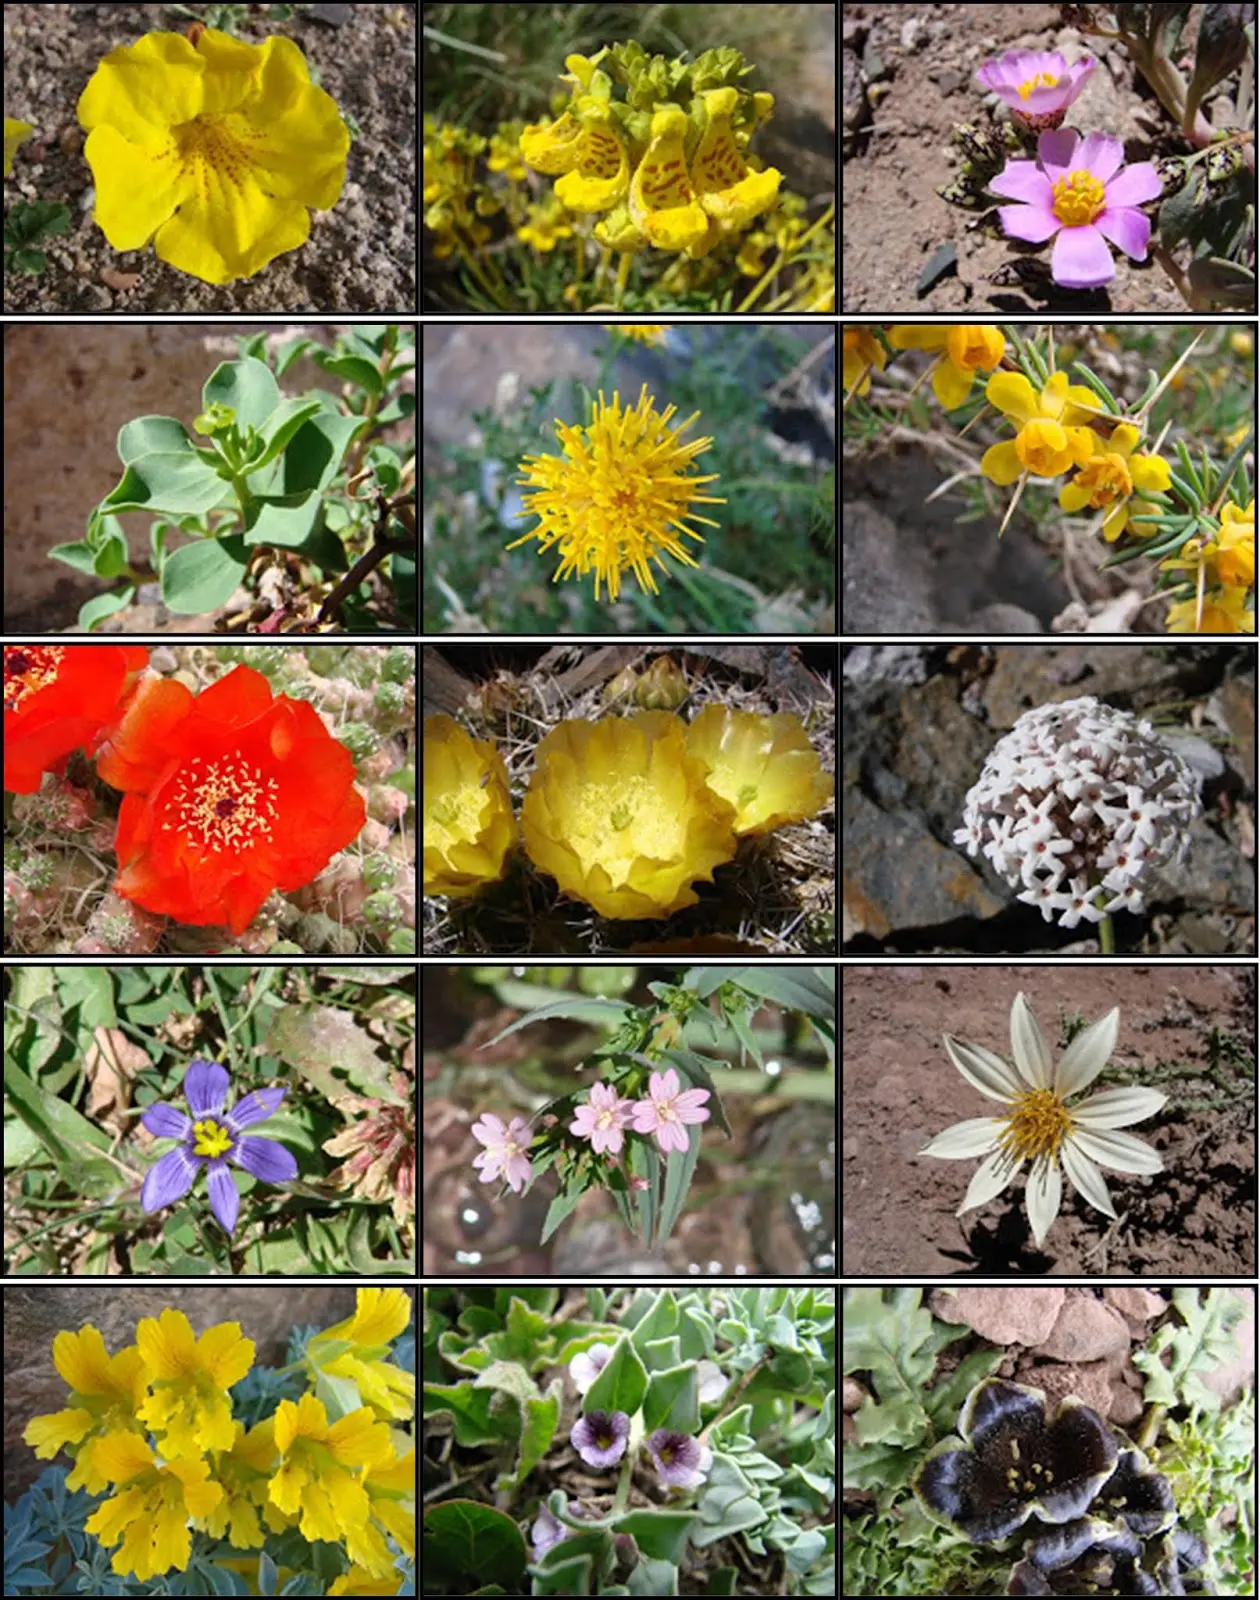 flora de uspallata - Qué significa la palabra Uspallata